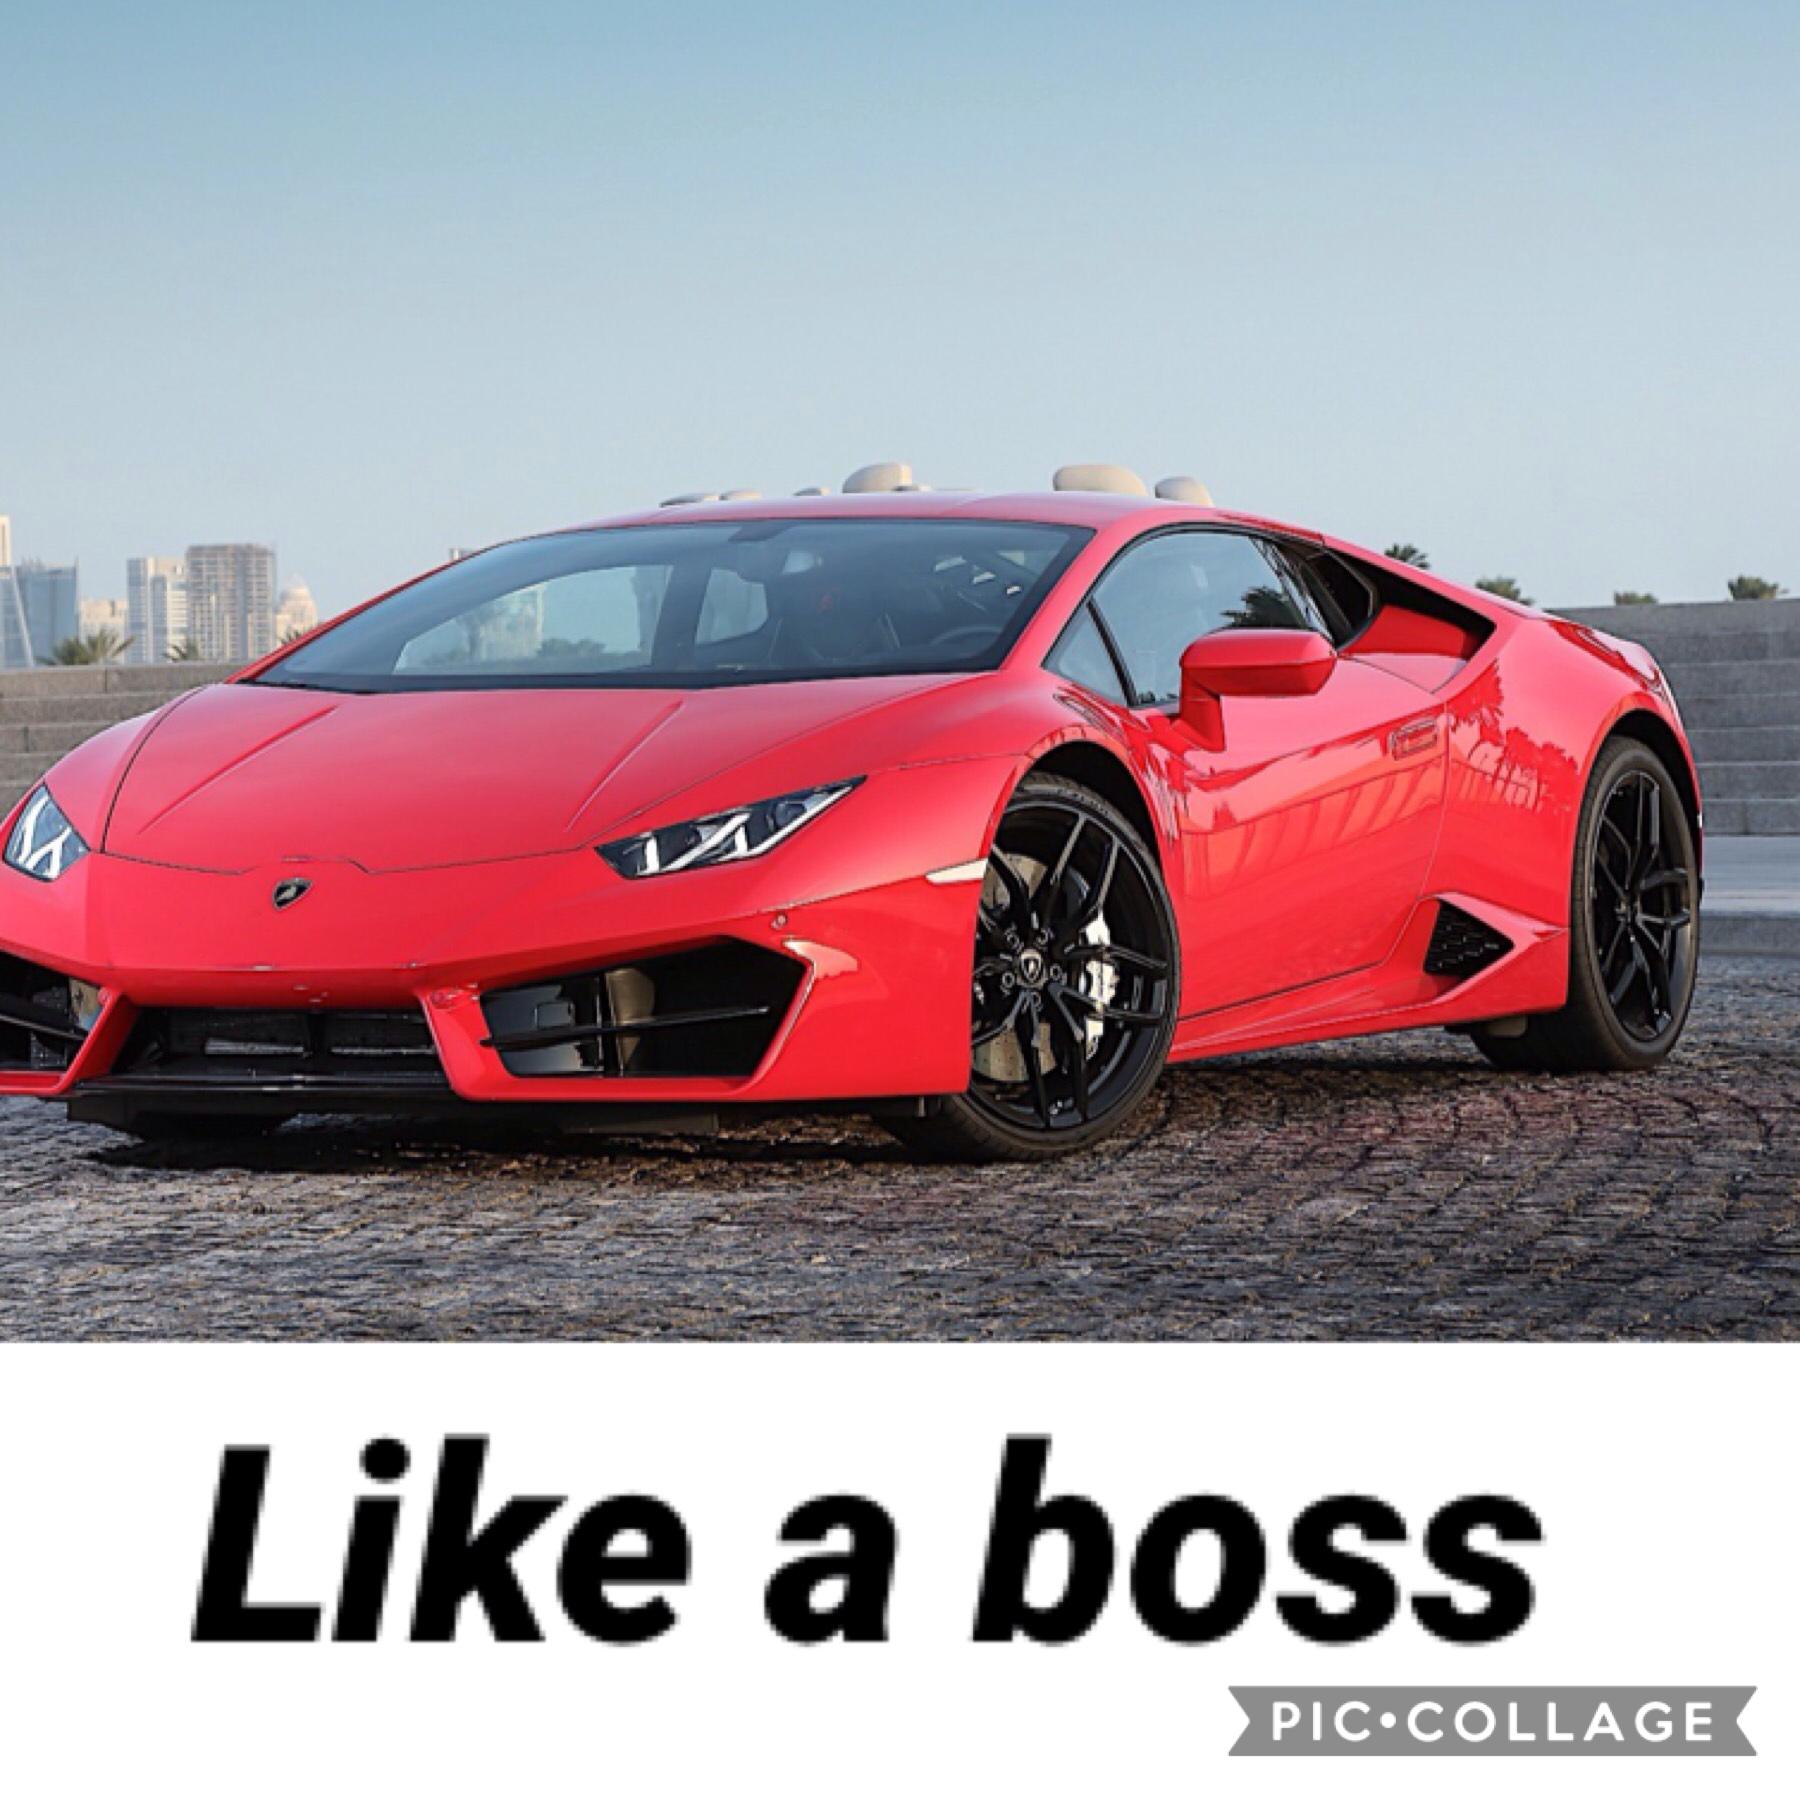 Like and follow if you like Lamborghini's
